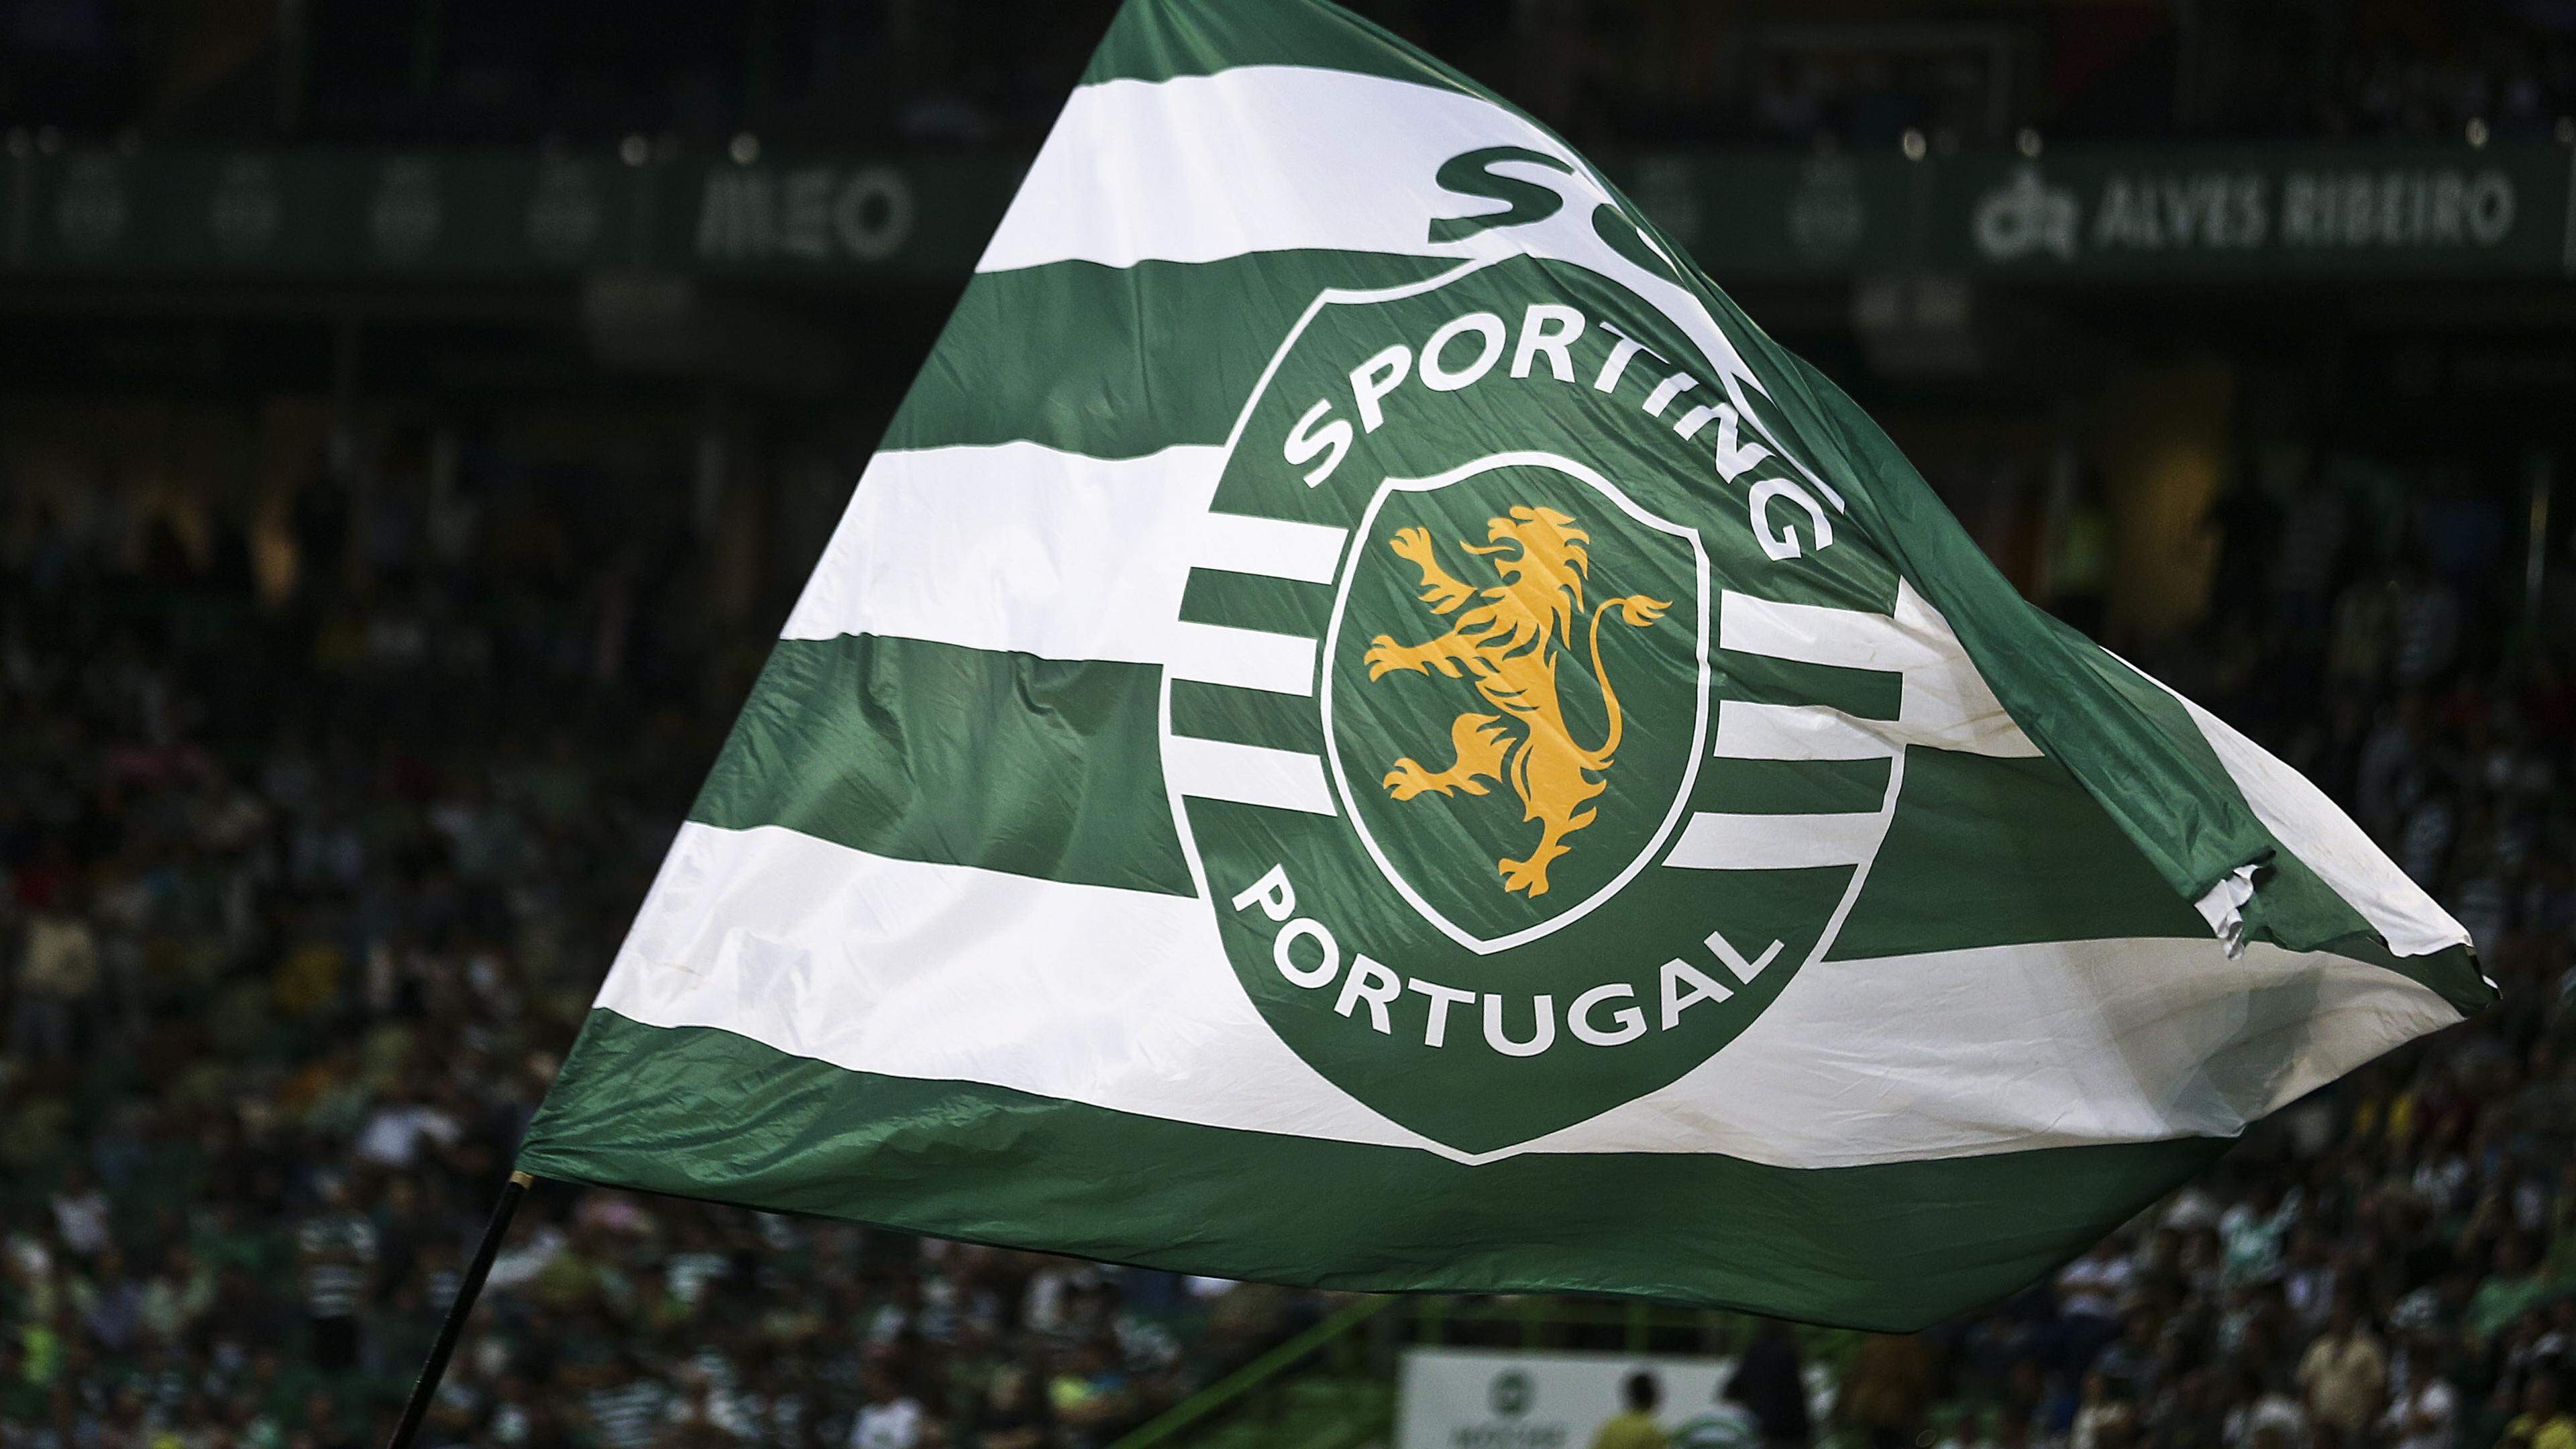 Bandeira do Sporting Clube de Portugal. JOSÉ SENA GOULÃO/LUSA